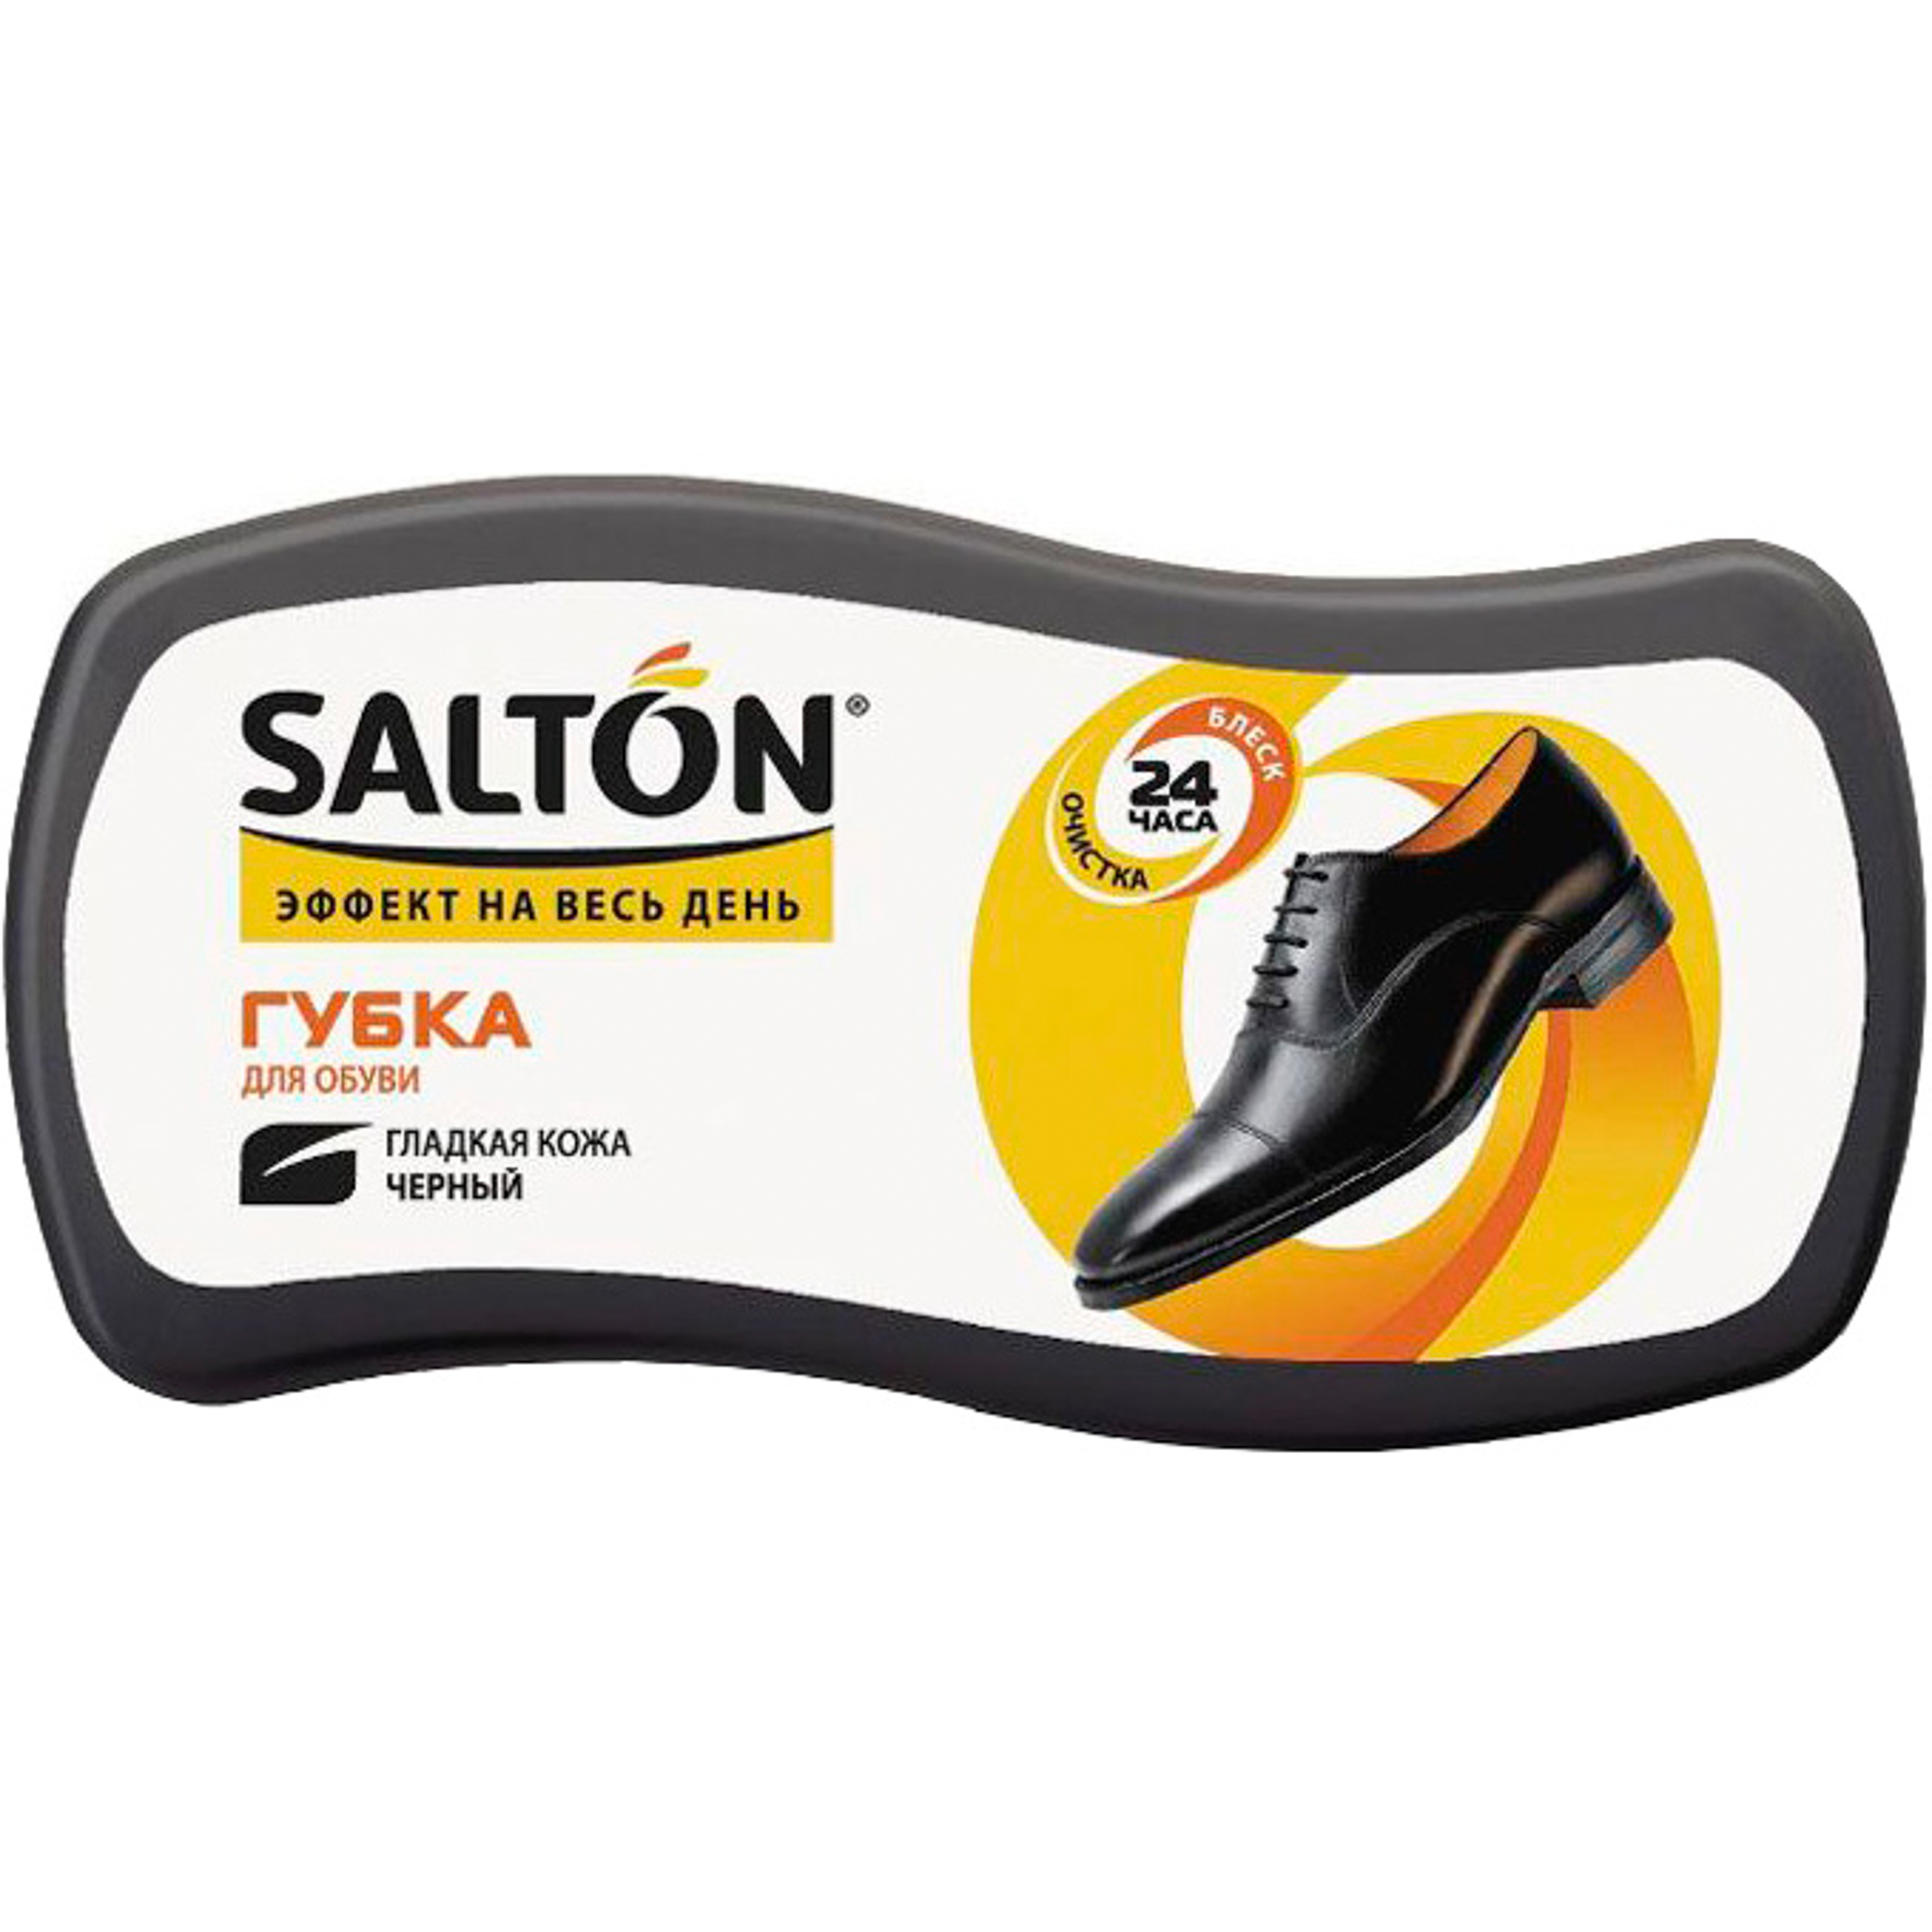 Губка Salton Волна для обуви из гладкой кожи 52/09 salton губка волна для обуви из гладкой кожи черный дизайн 2017